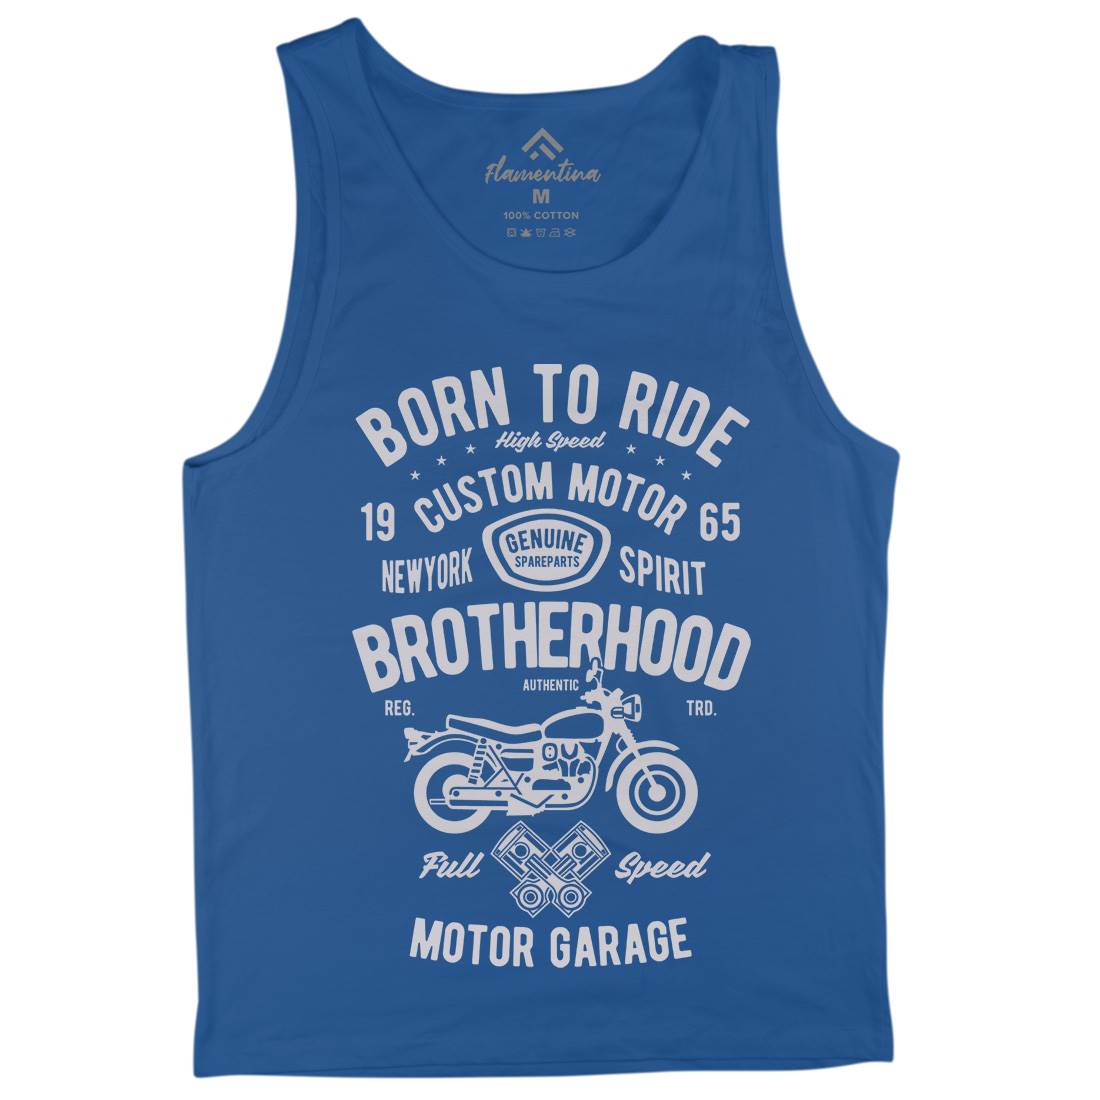 Brotherhood Mens Tank Top Vest Motorcycles B423